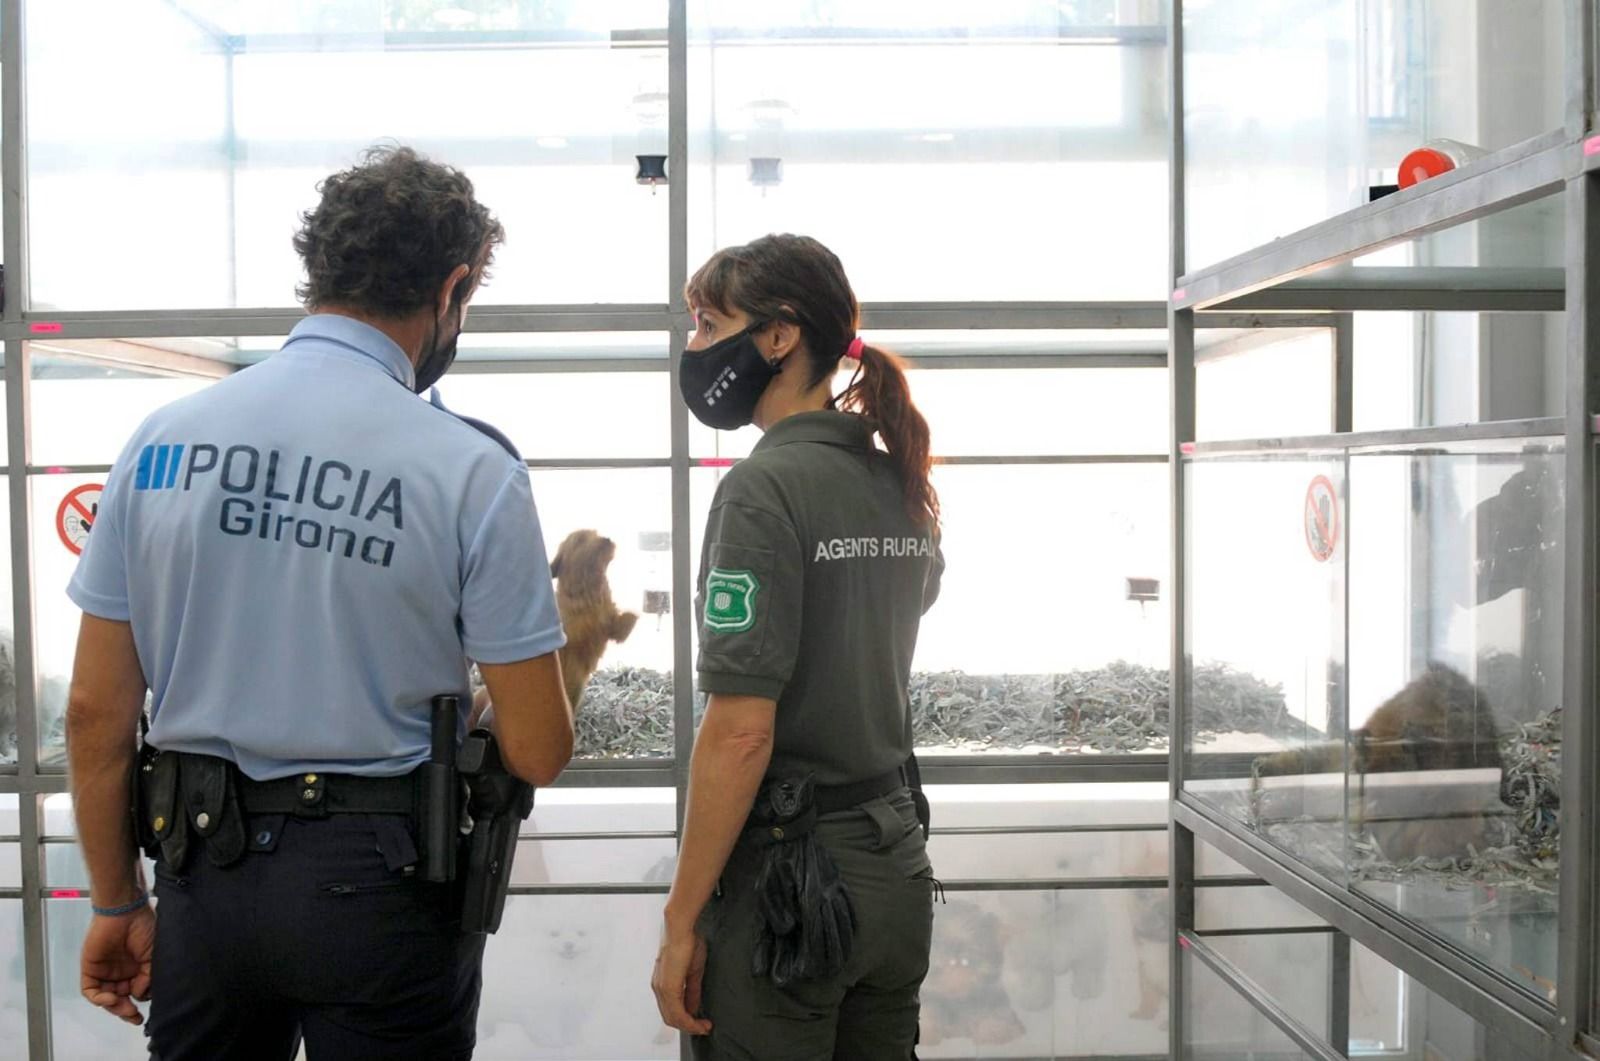 La Policia Municipal i els Agents Rurals inspeccionen les botigues d'animals de Girona